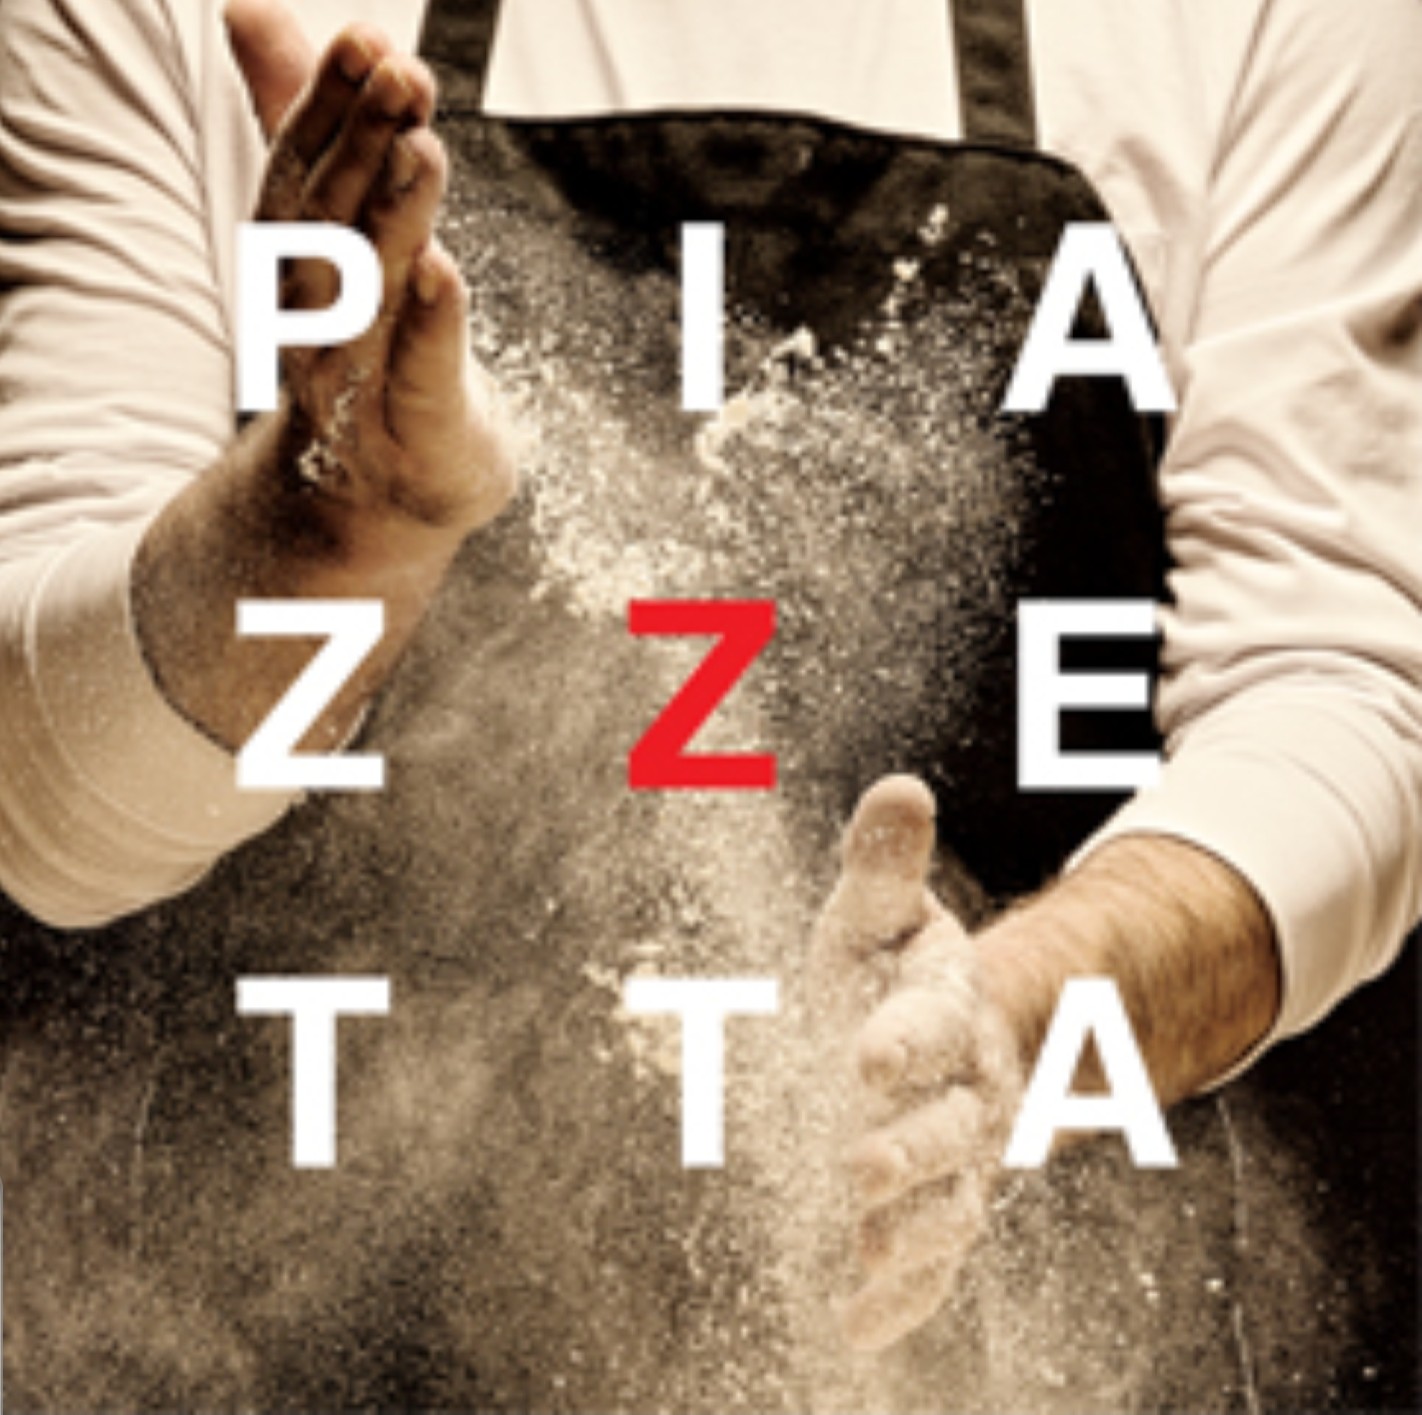 Piazzetta 2019